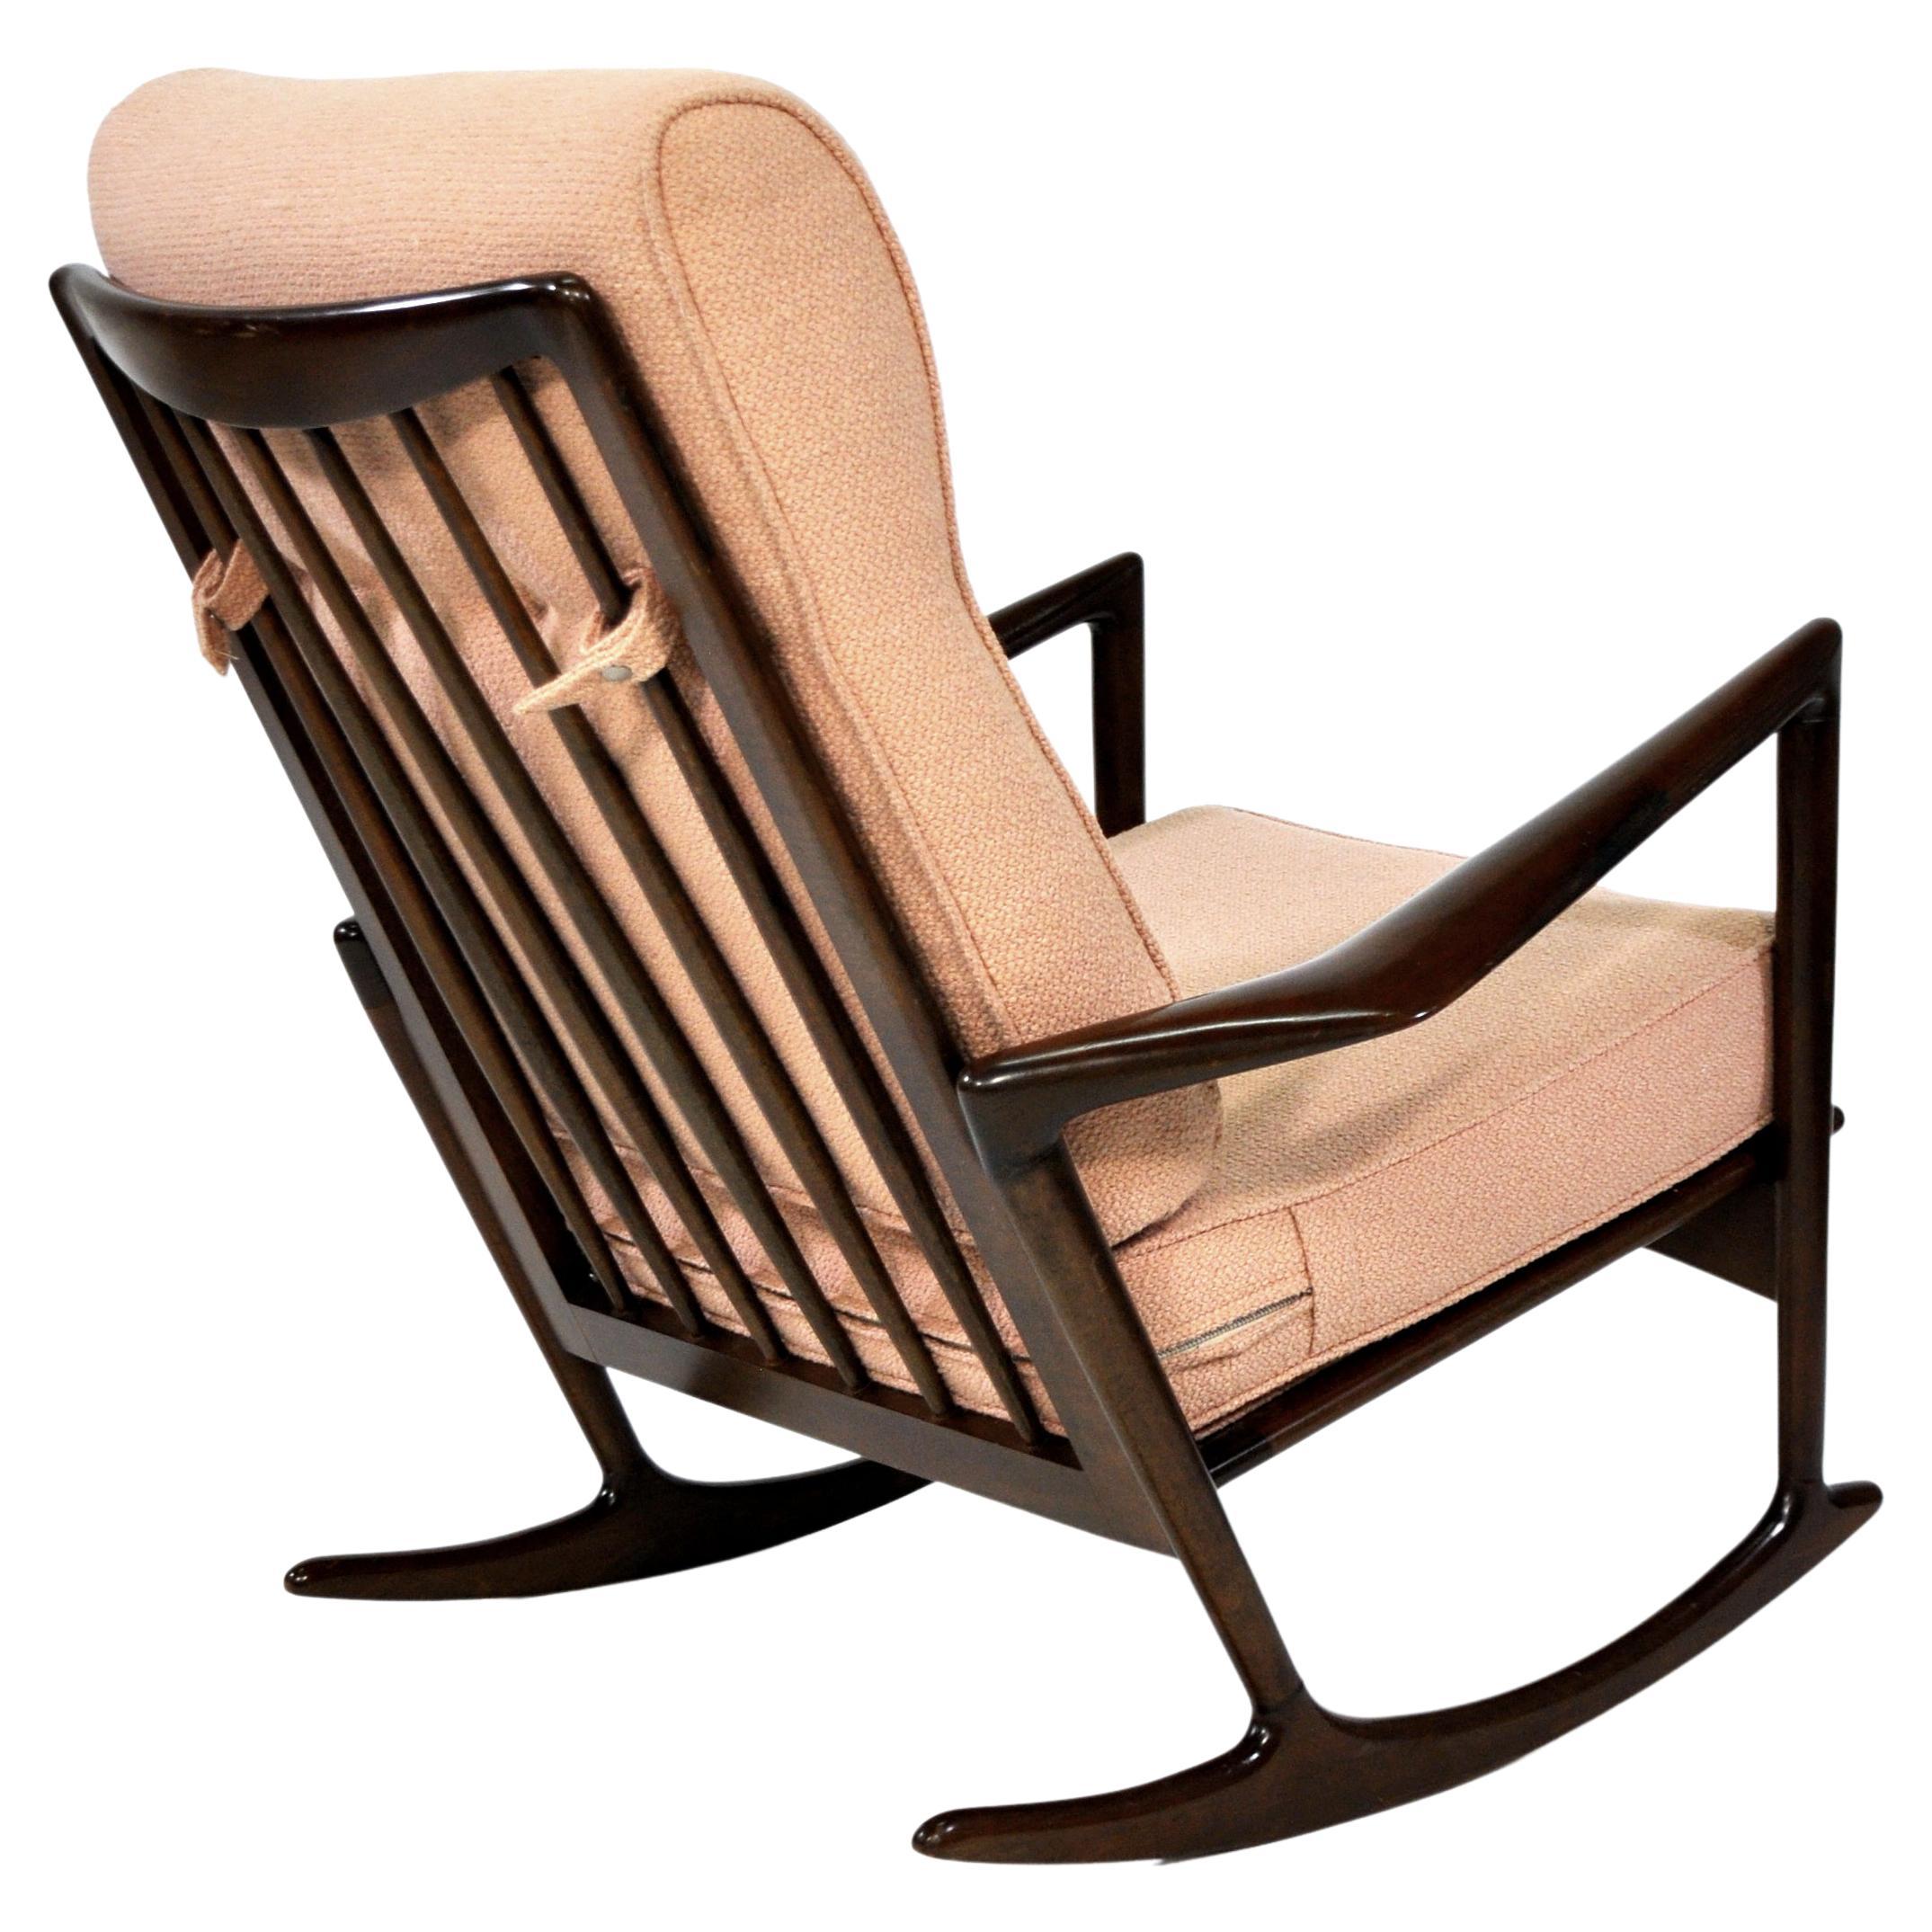 Danish Ib Kofod-Larsen Sculptural Rocking Chair for Selig, Denmark, 1960s For Sale